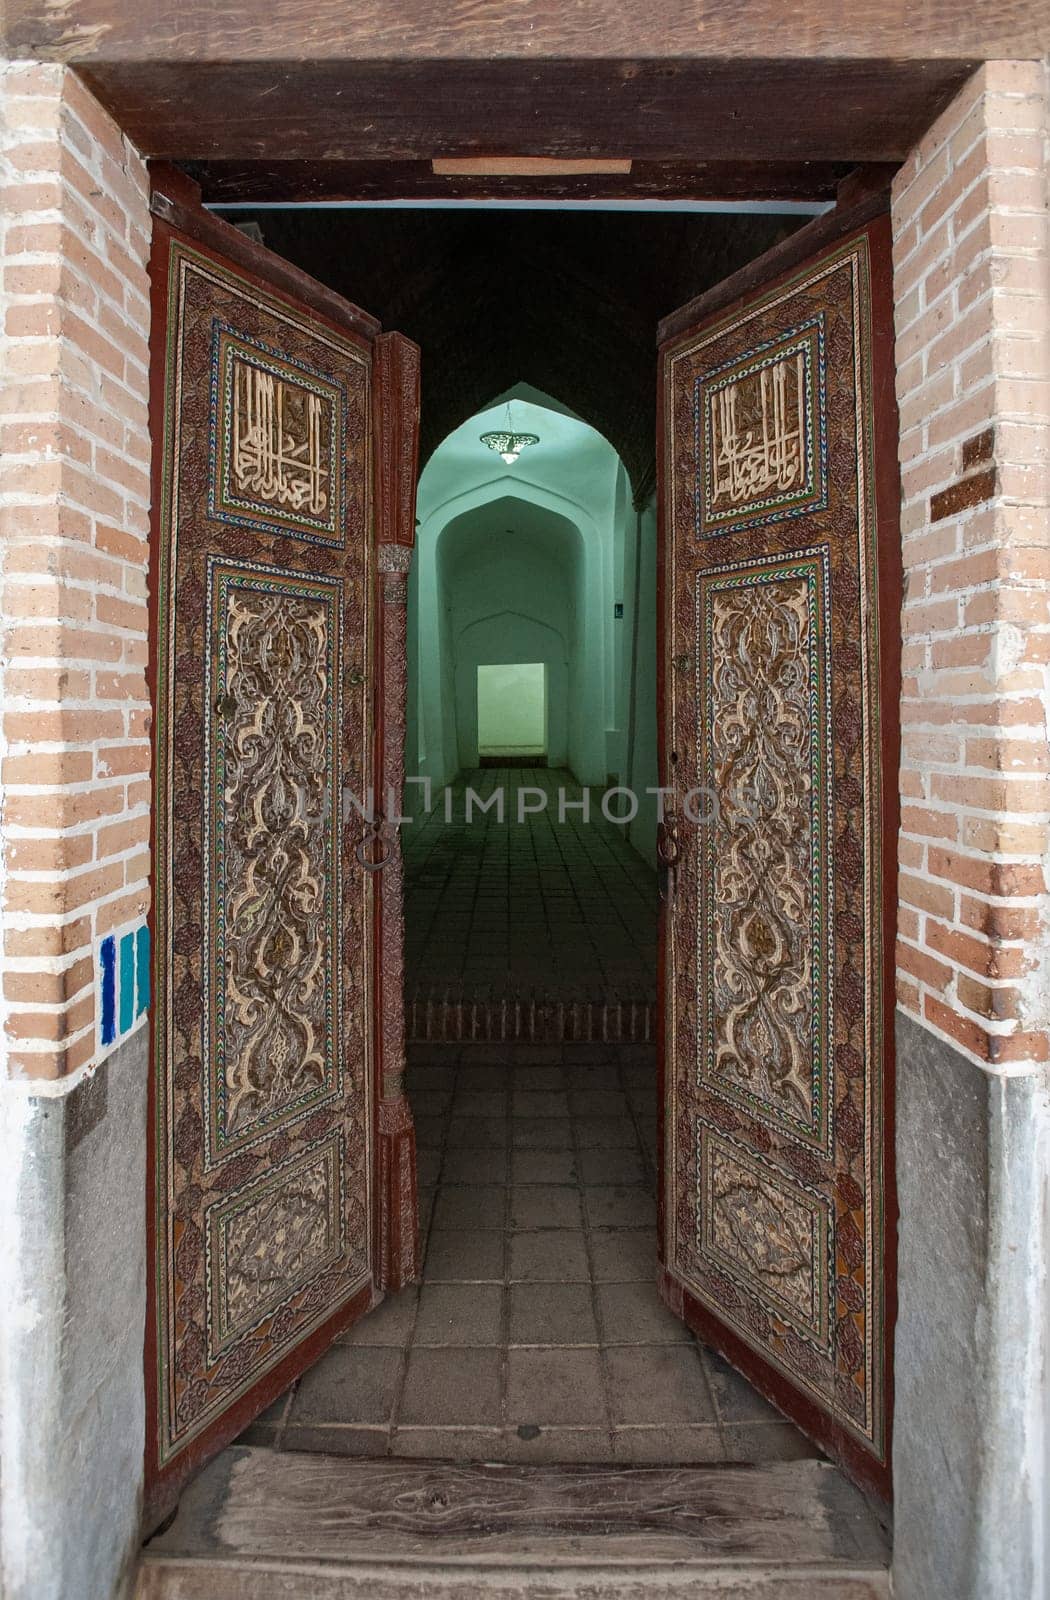 The Shahi Zinda Memorial Complex in Samarkand, Uzbekistan